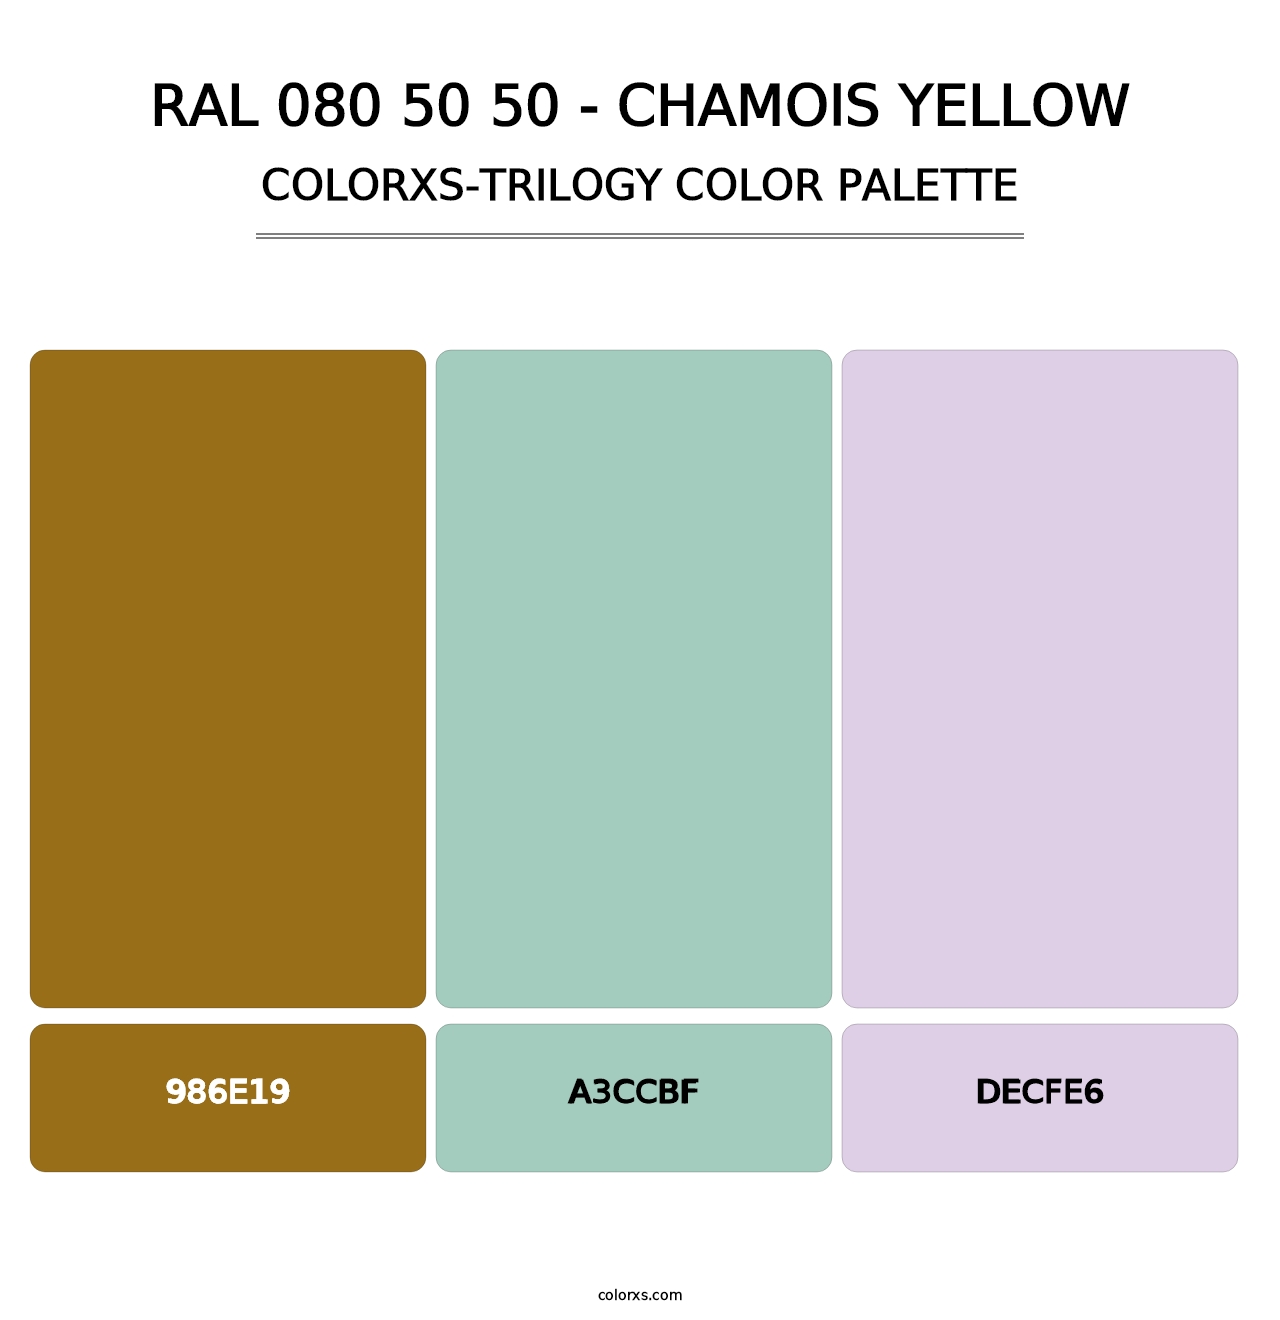 RAL 080 50 50 - Chamois Yellow - Colorxs Trilogy Palette